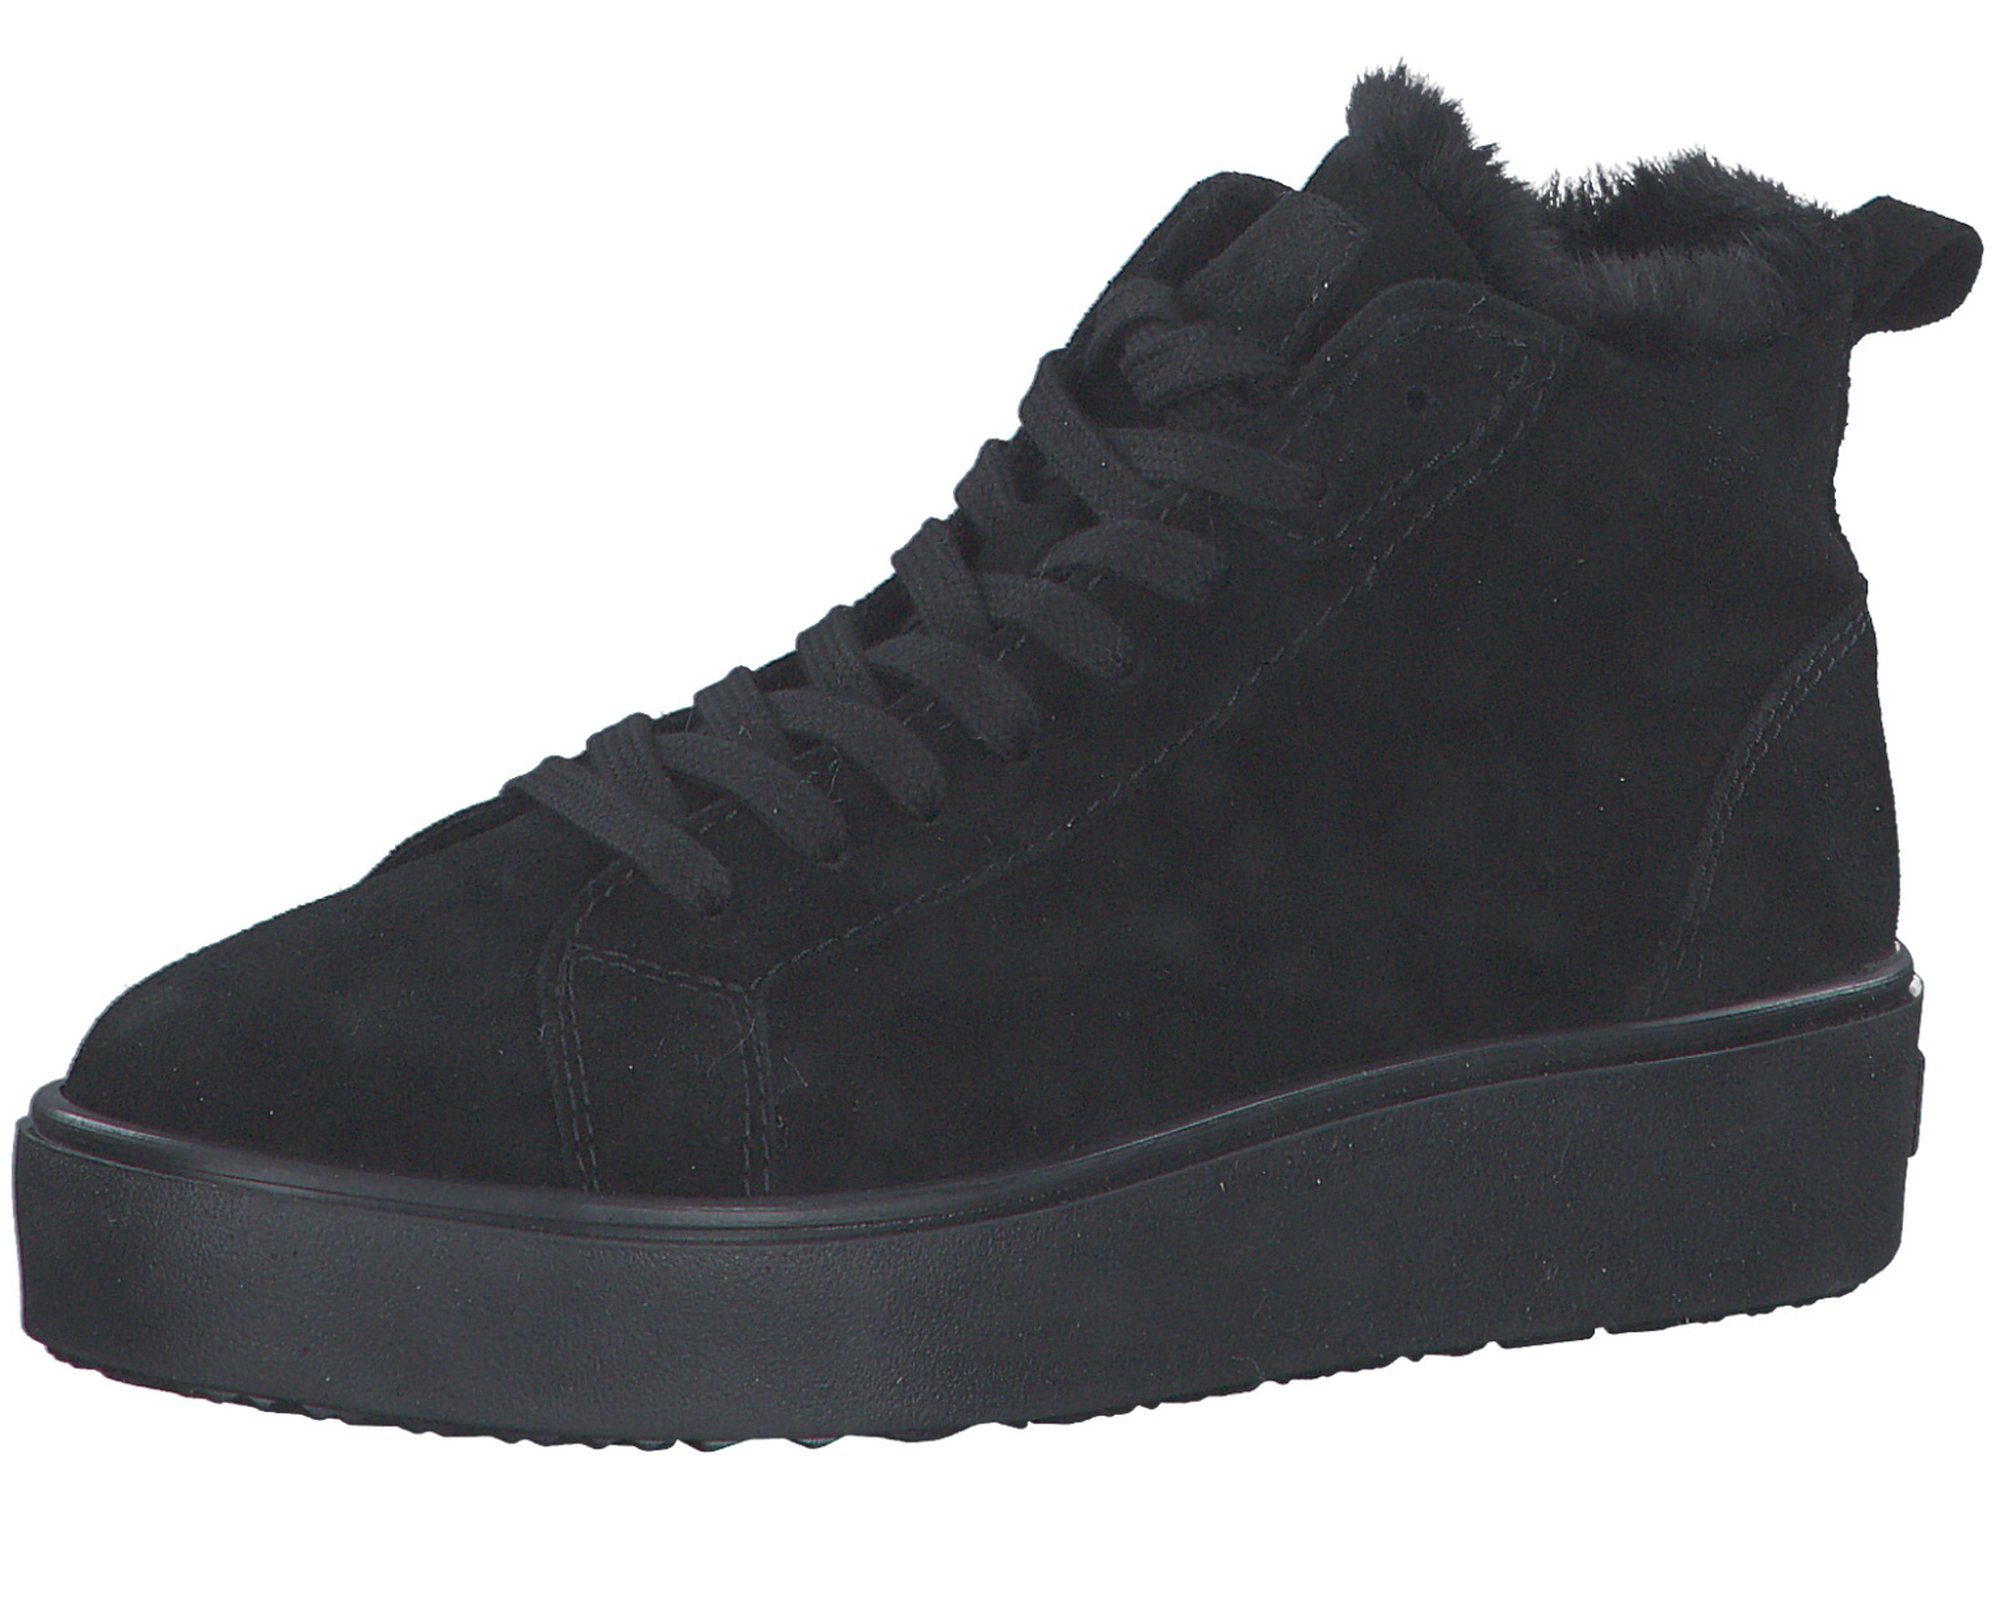 Tamaris 1-26204-29 001 Black Sneaker